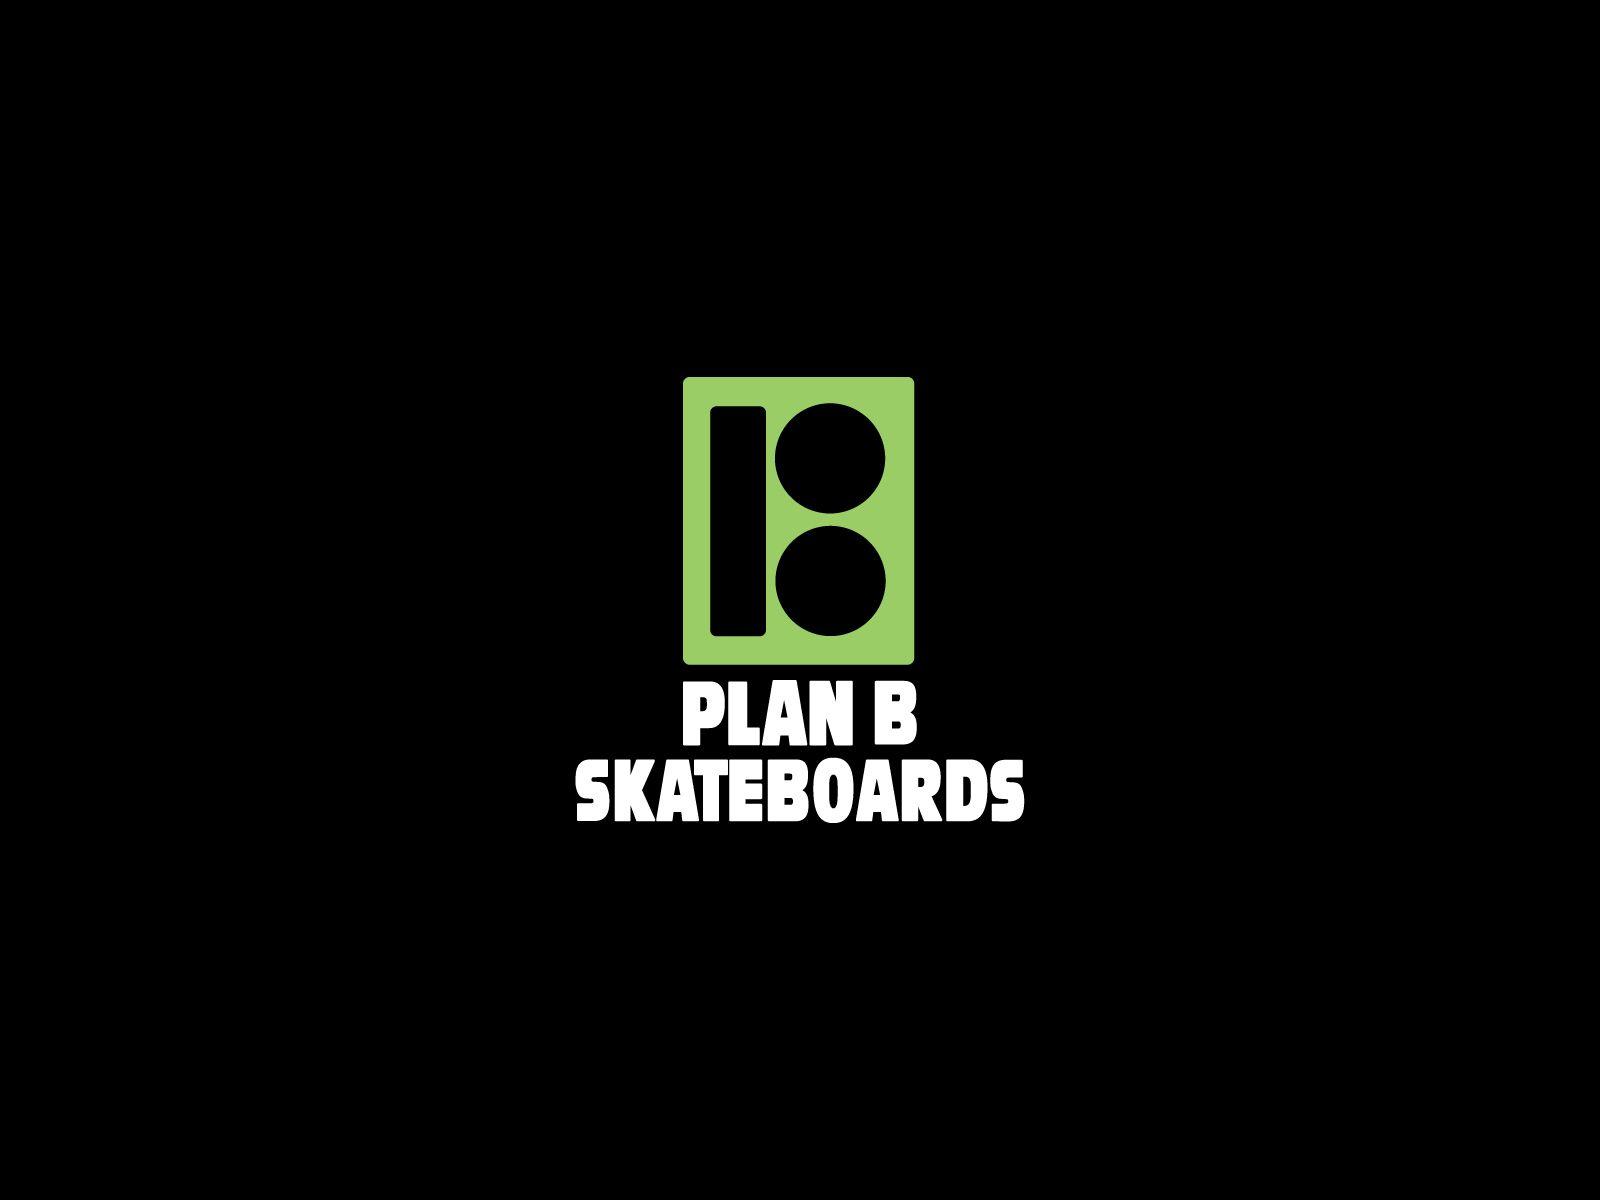 Skateboarding wallpapers, skateboard wallpapers, sk8 walls